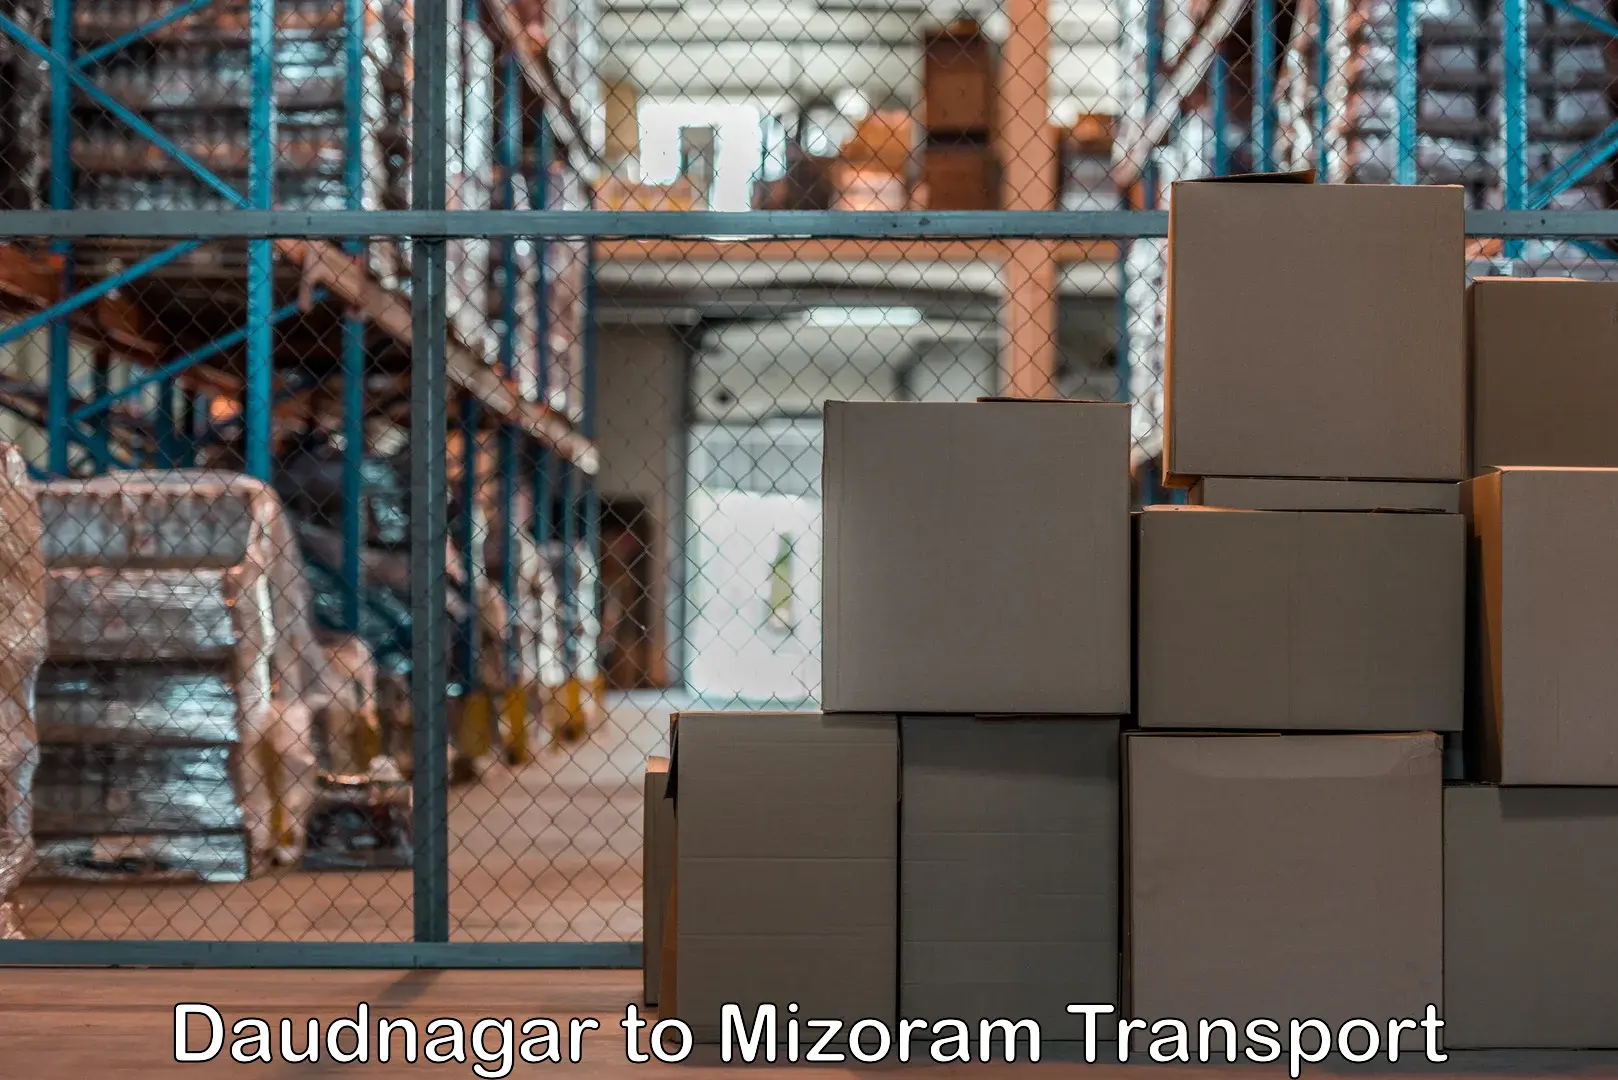 Land transport services Daudnagar to Aizawl